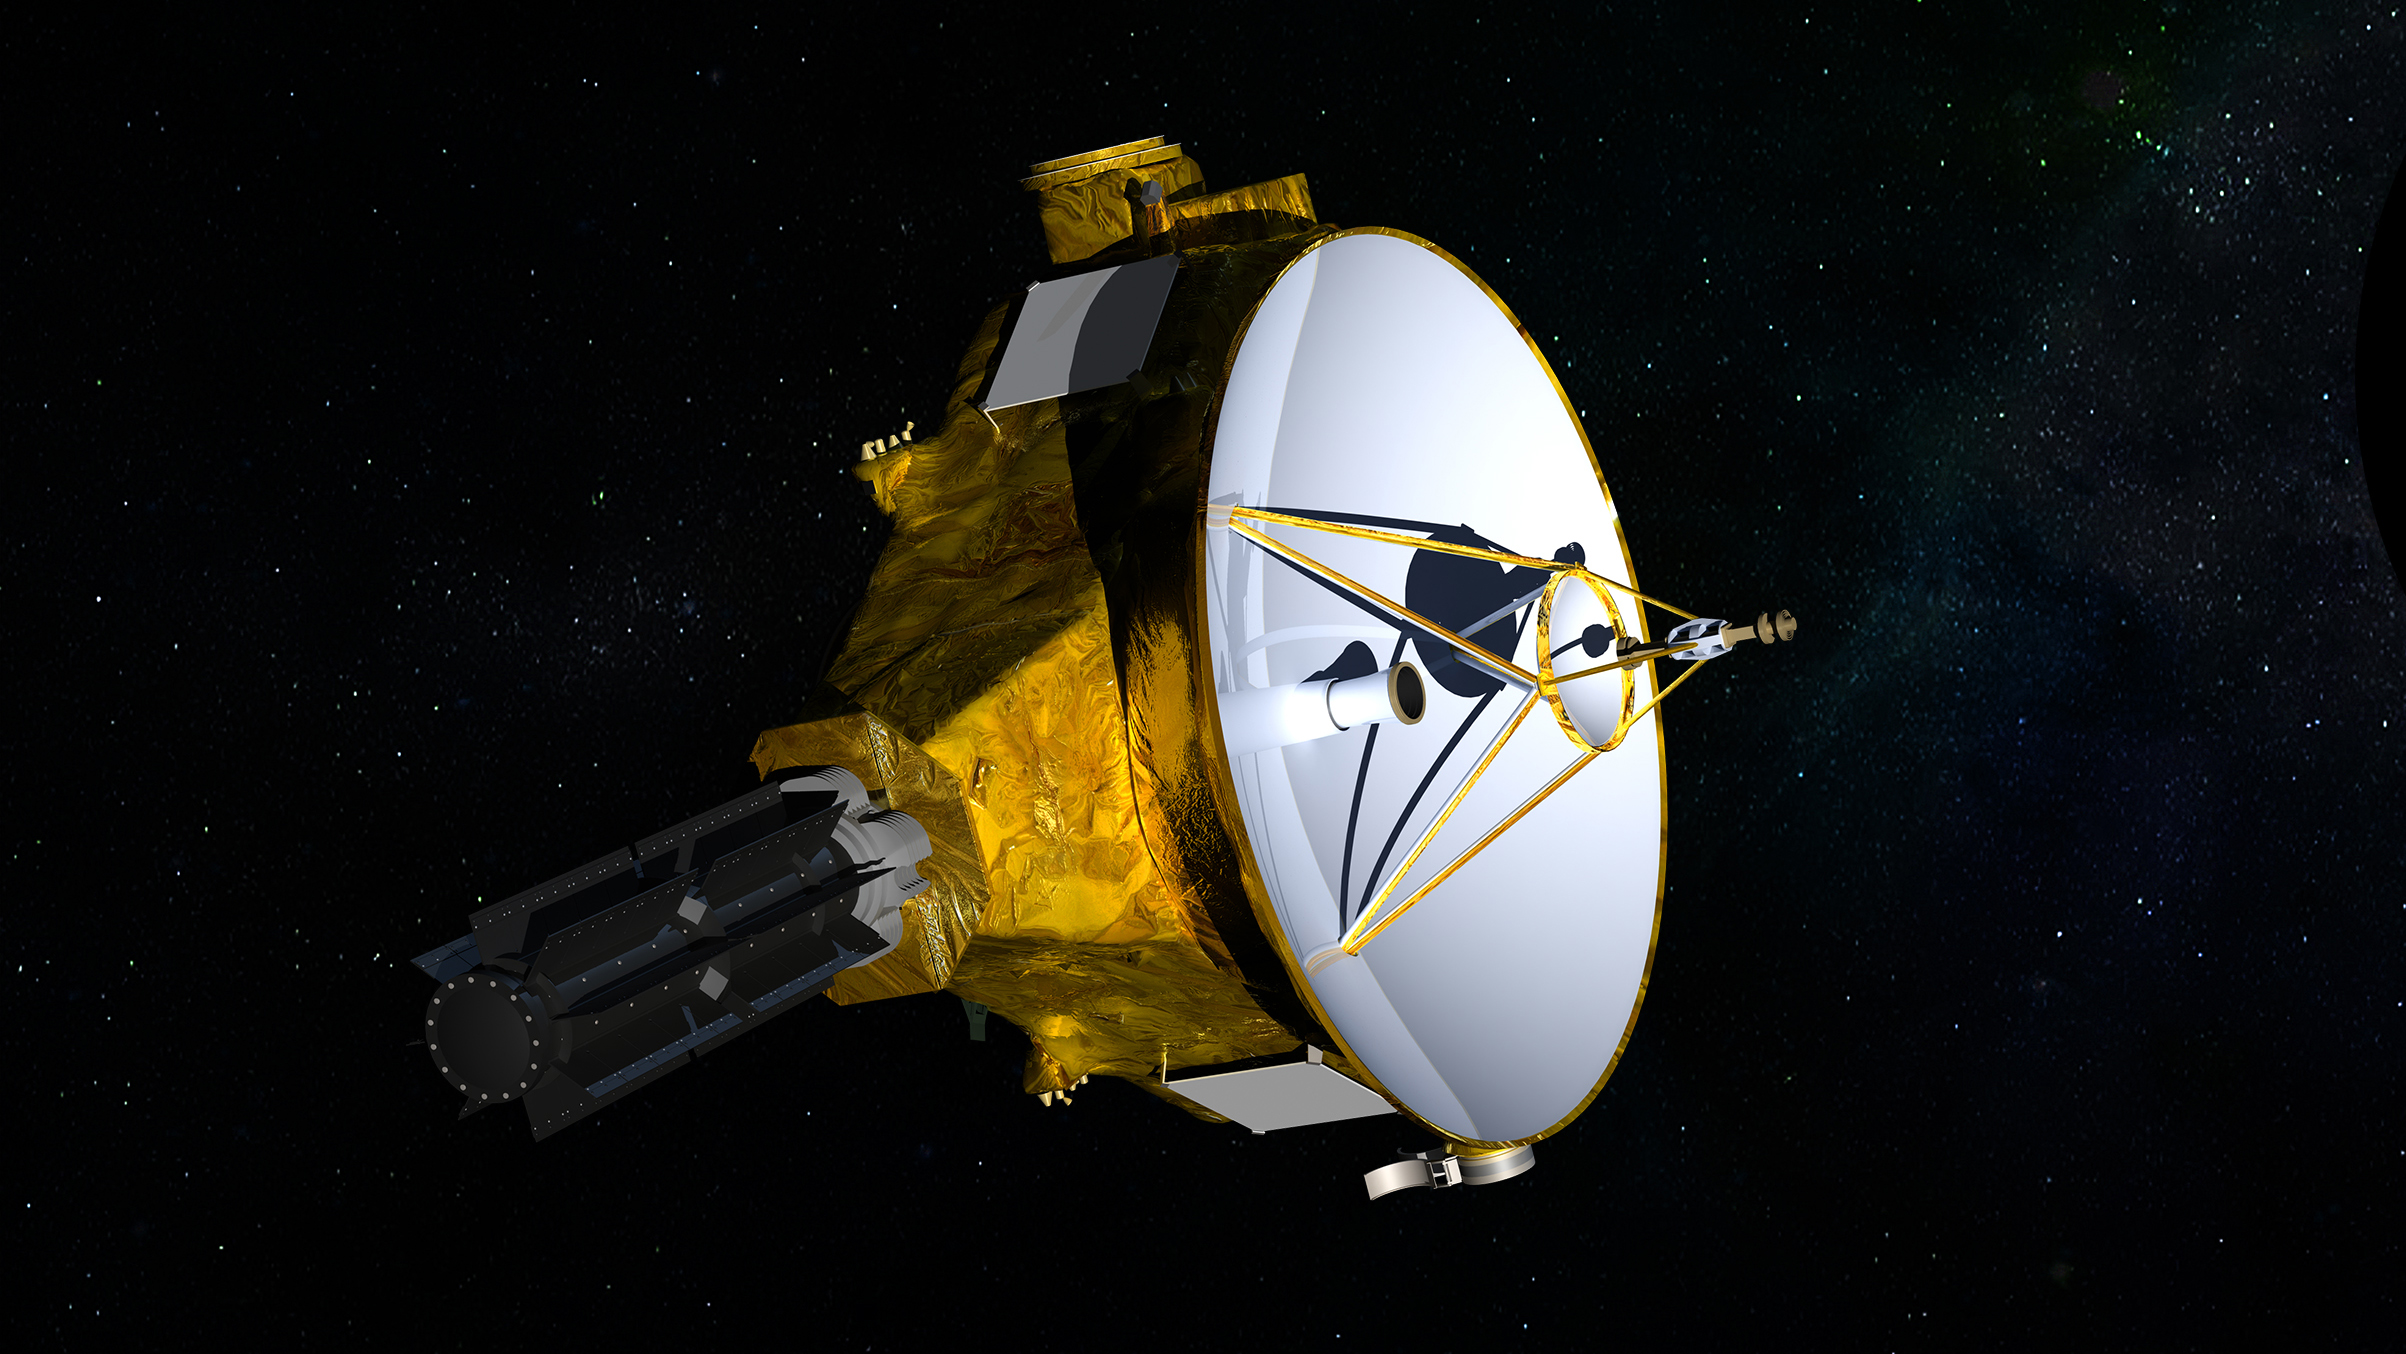 Une impression artistique du vaisseau spatial New Horizons de la NASA